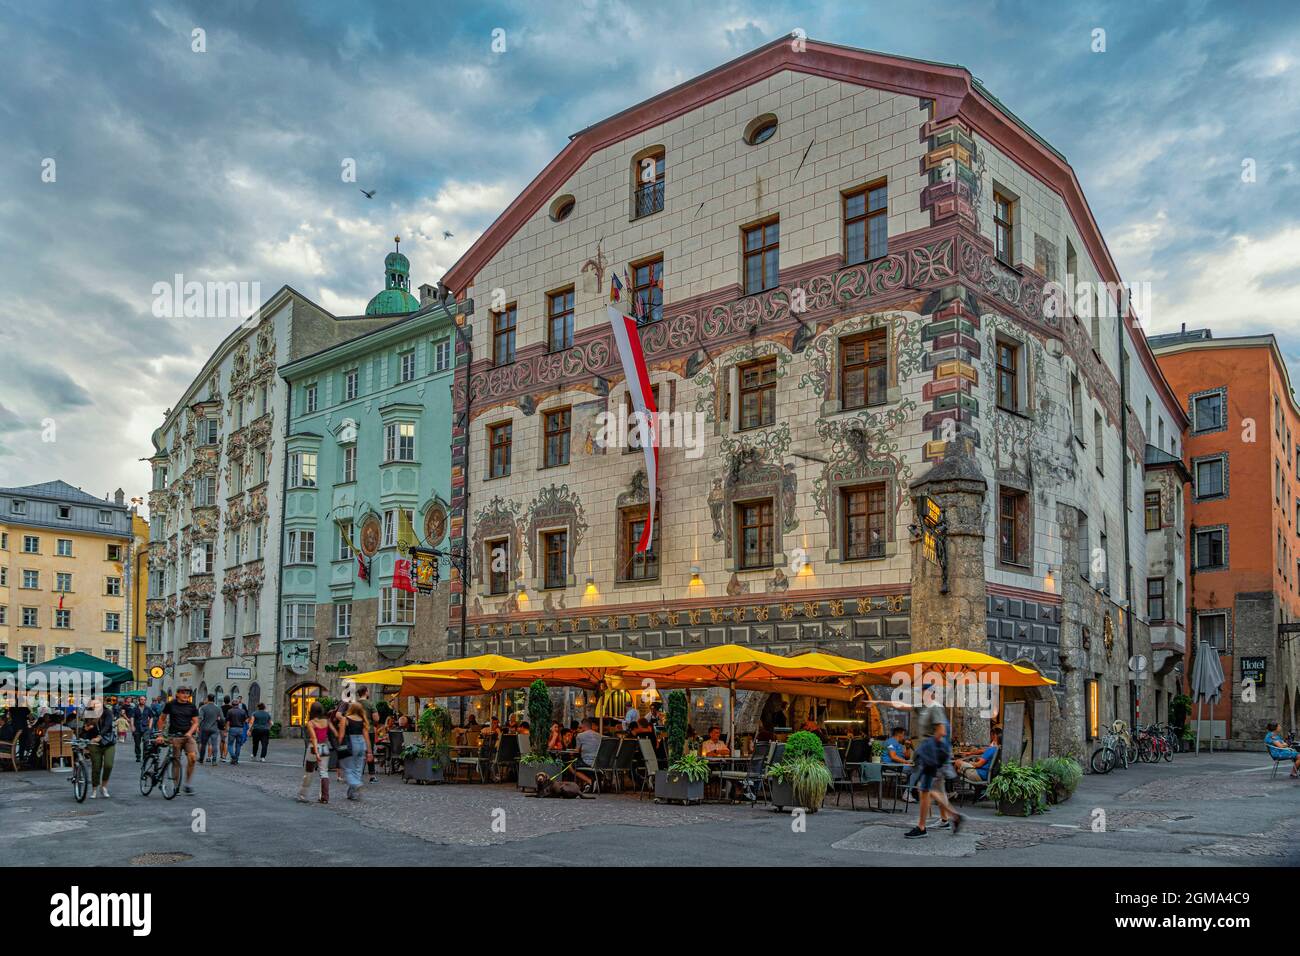 Malerisch traditionell geschmückte Fassaden typischer Innsbrucker Häuser und Restaurants. Innsbruck, Tirol, Österreich, Europa Stockfoto